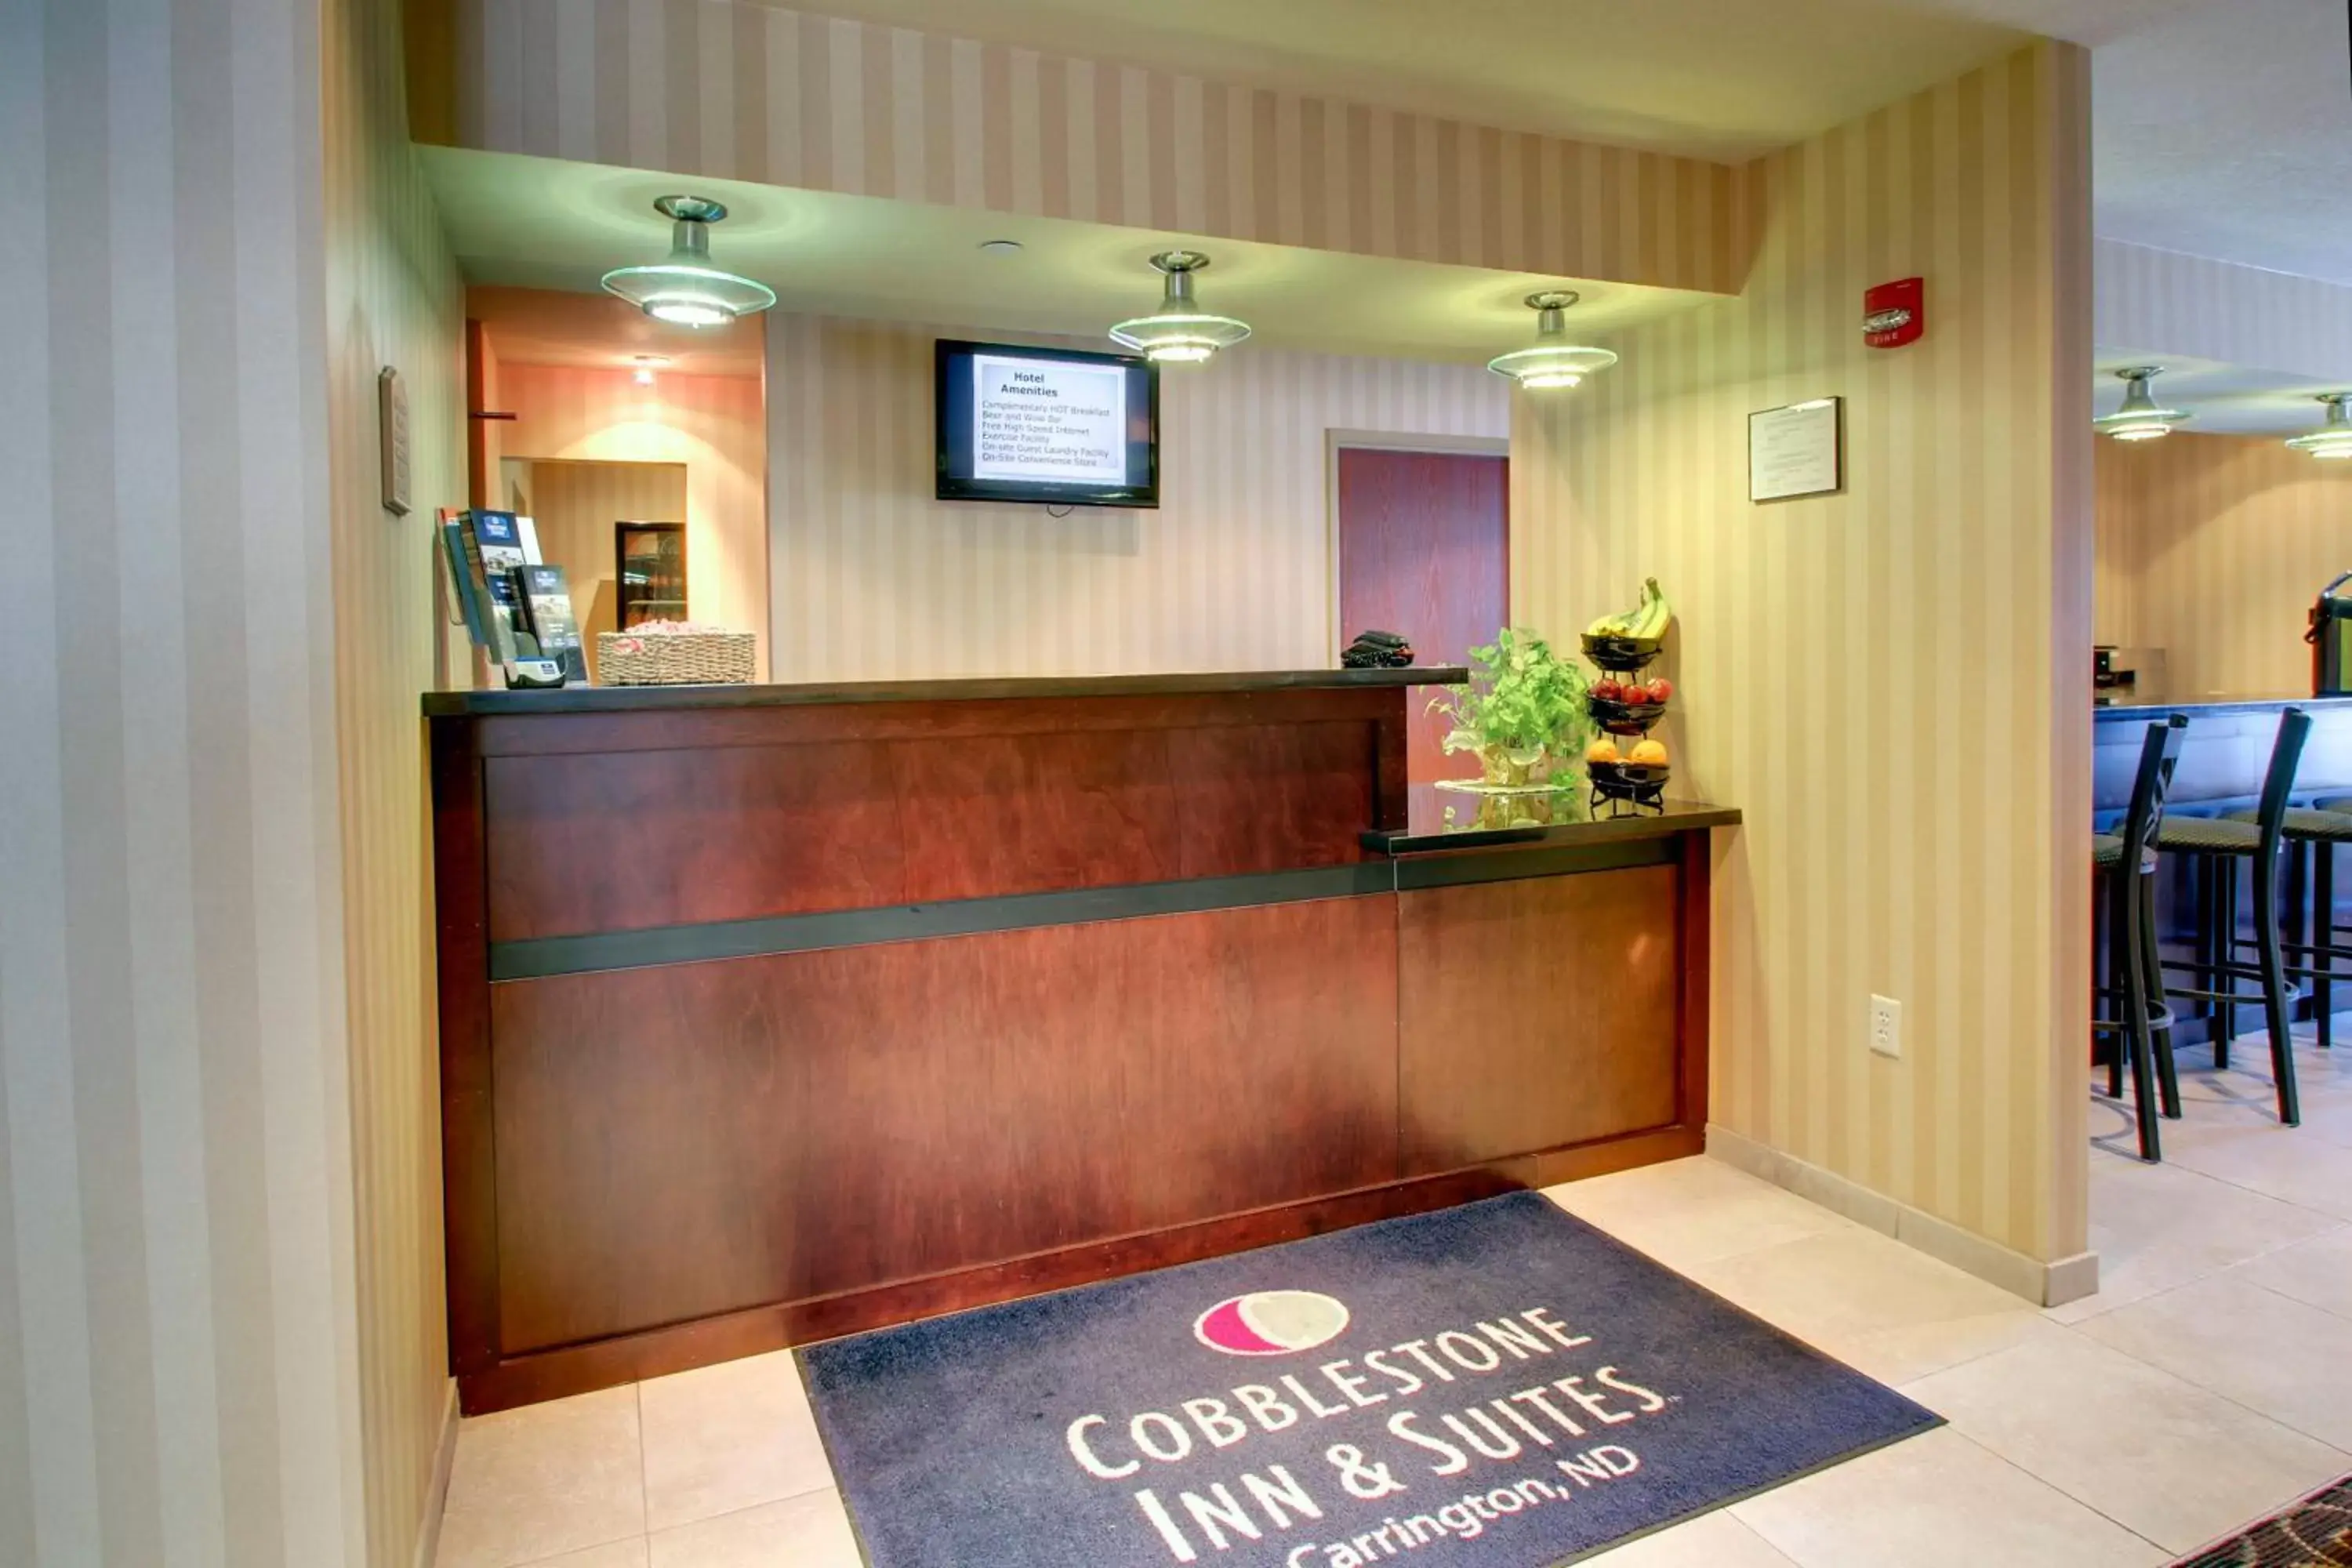 Lobby or reception, Lobby/Reception in Cobblestone Inn & Suites - Carrington